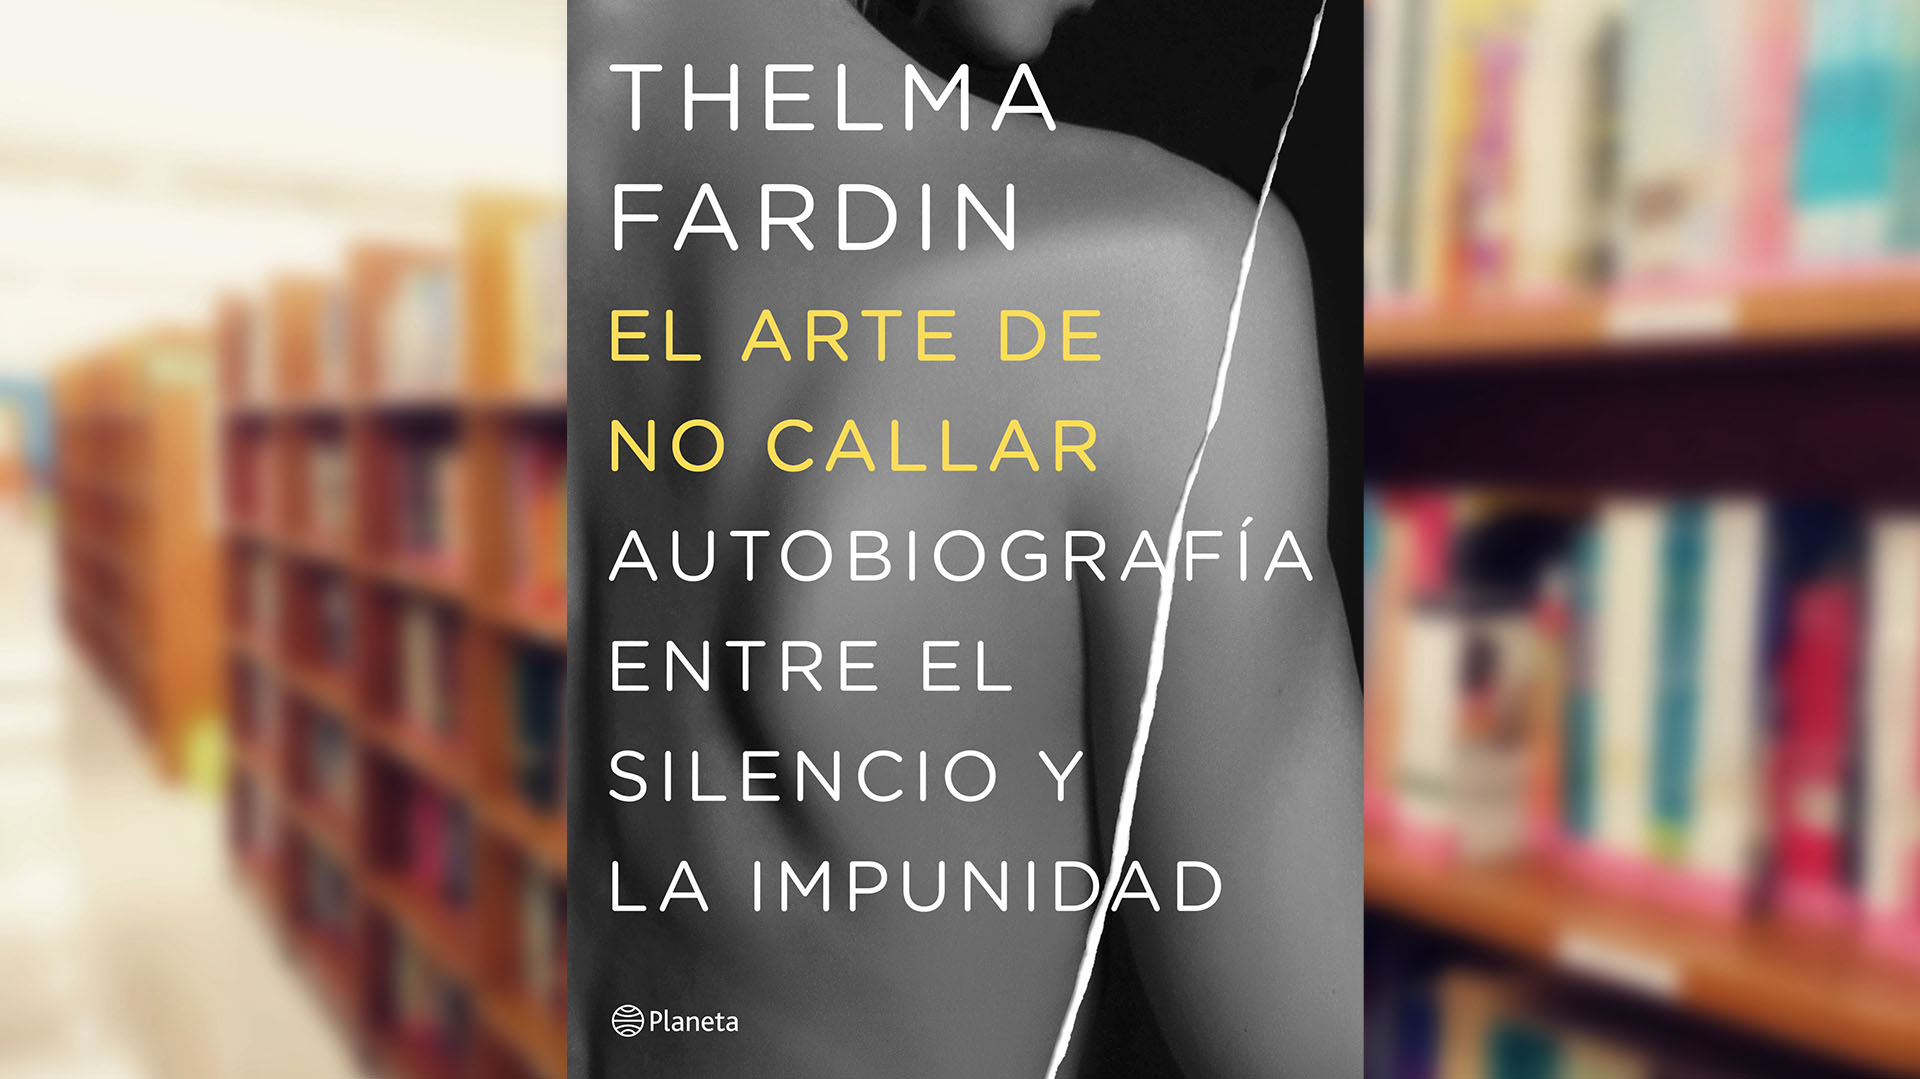 El libro de Thelma Fardin sobre el arte de no callar y las consecuencias en el aumento de las denuncias de abuso en Argentina que ahora podrían revertirse